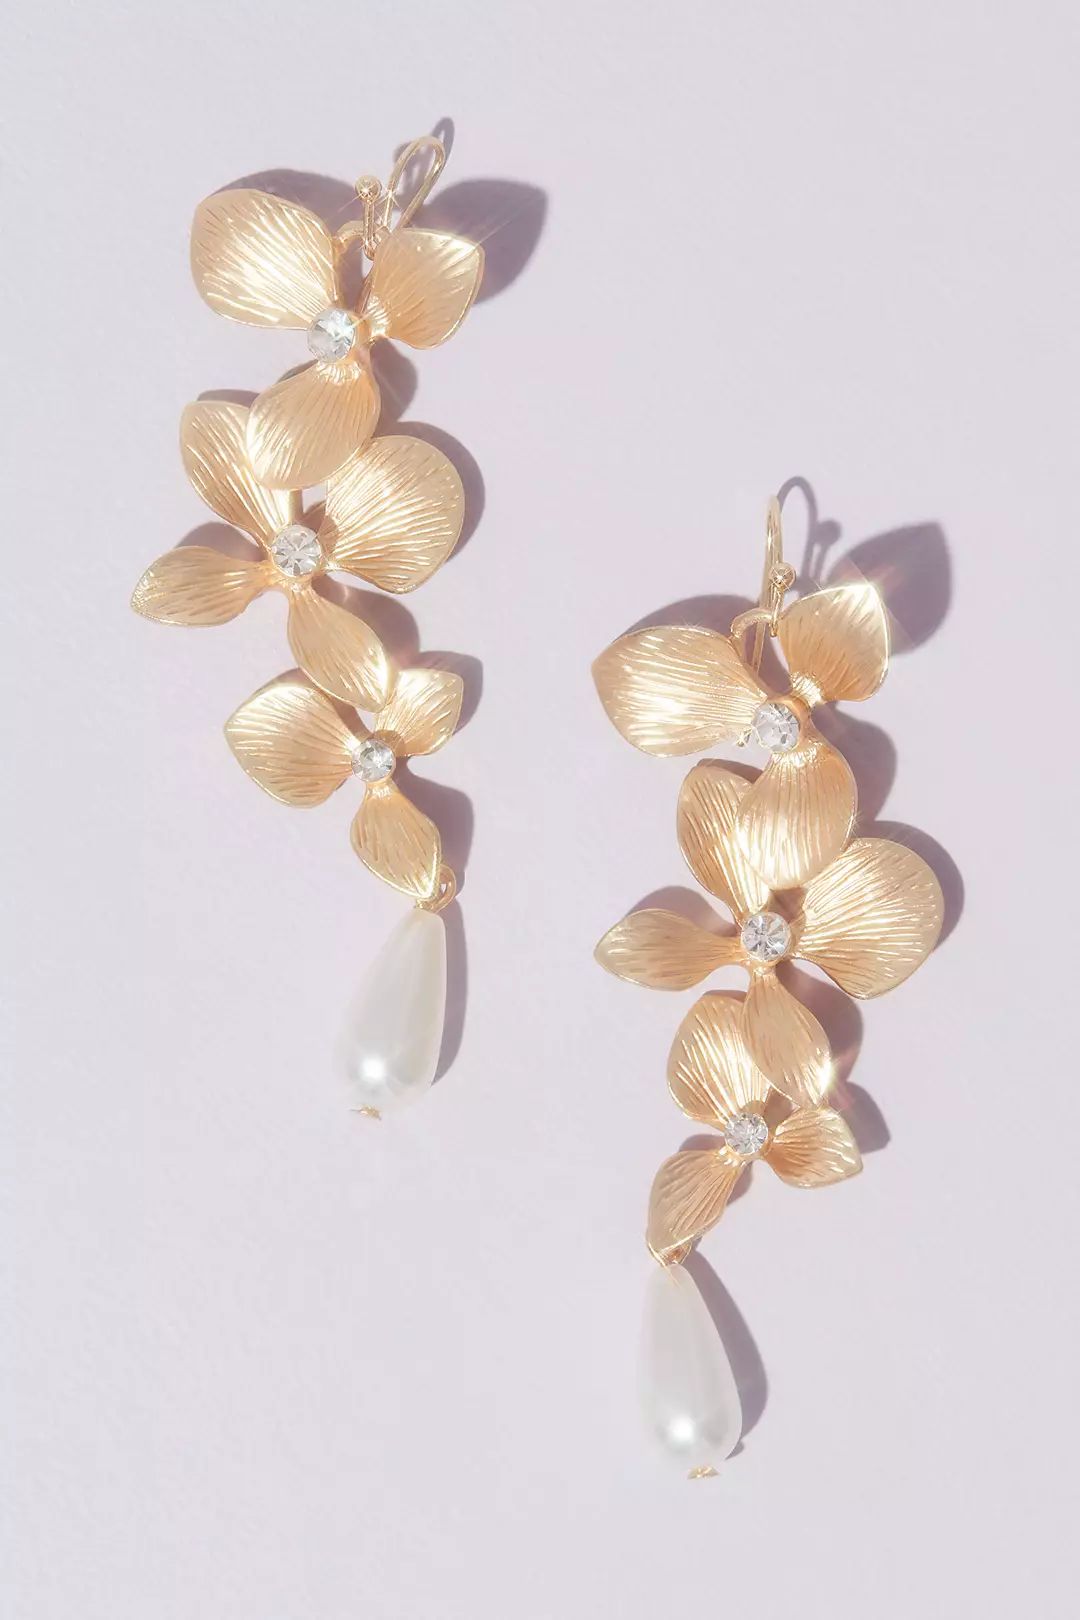 Dangling Floral Drop Earrings with Teardrop Pearls Image